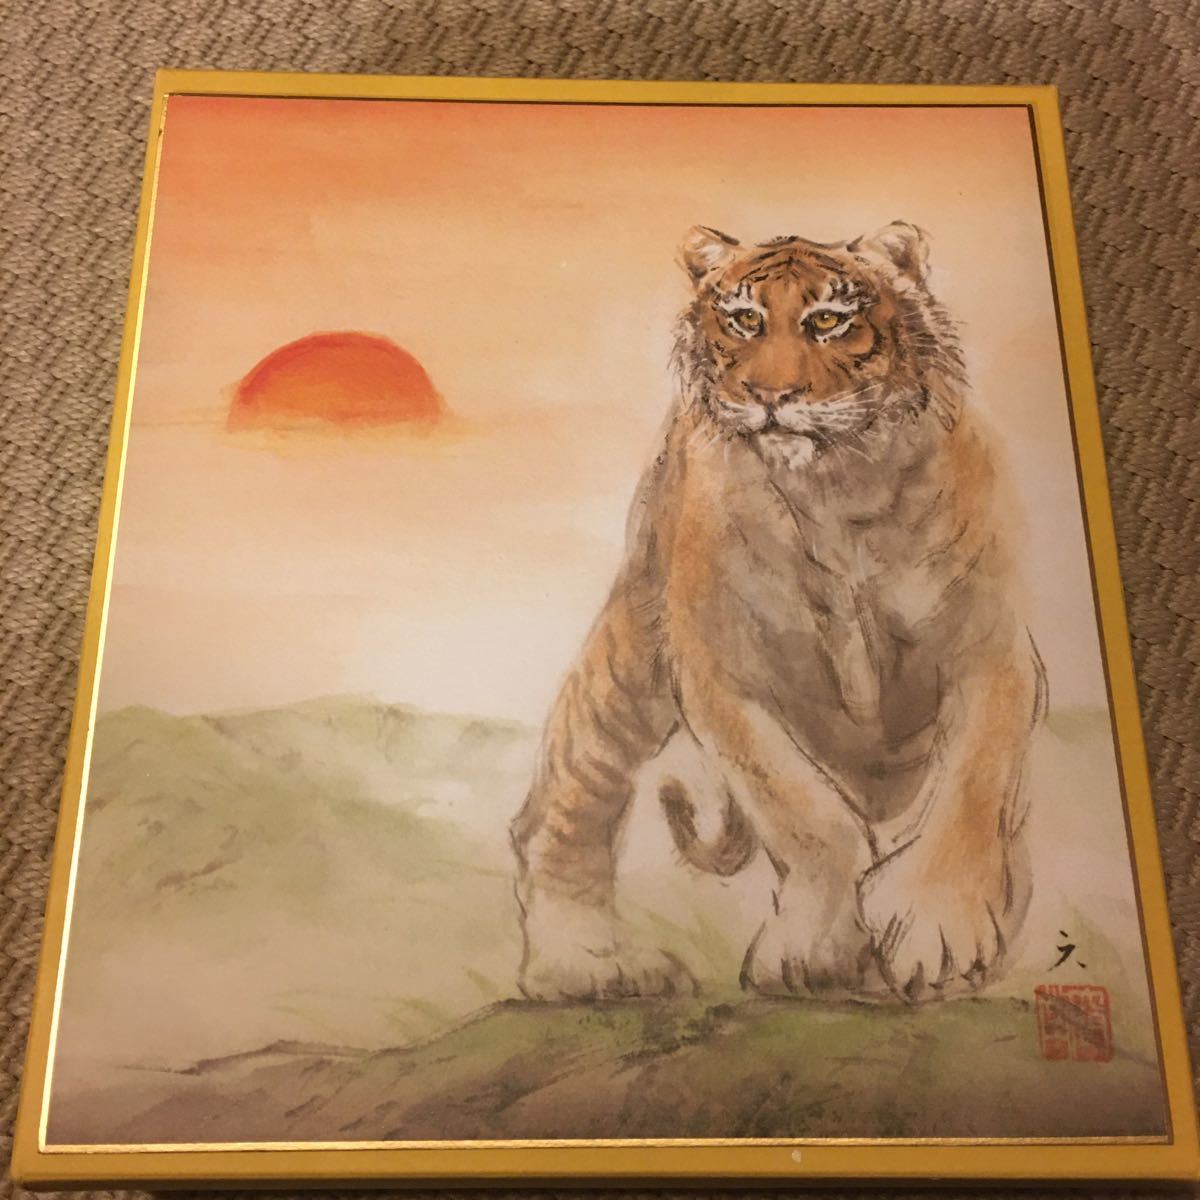 Купите сейчас Фудзивара Рокугендо Цветная бумага со зодиаком Репродукция тигра на цветной бумаге Картина Японская живопись Зодиак тигр Стоимость доставки \ 230, произведение искусства, книга, цветная бумага